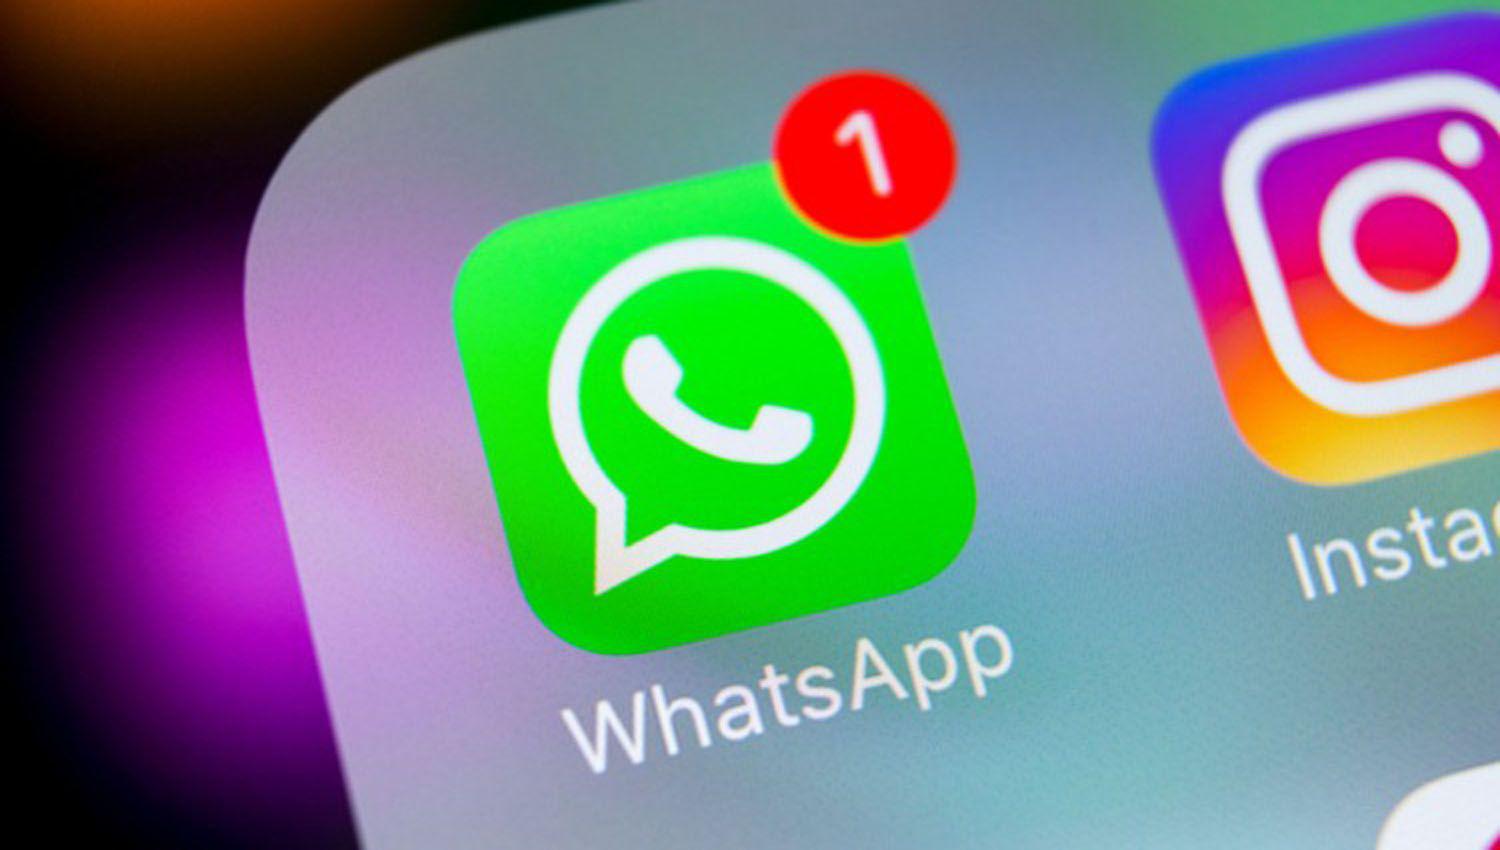 La Secretariacutea de Comercio formalizoacute la cautelar contra WhatsApp por los datos de los usuarios